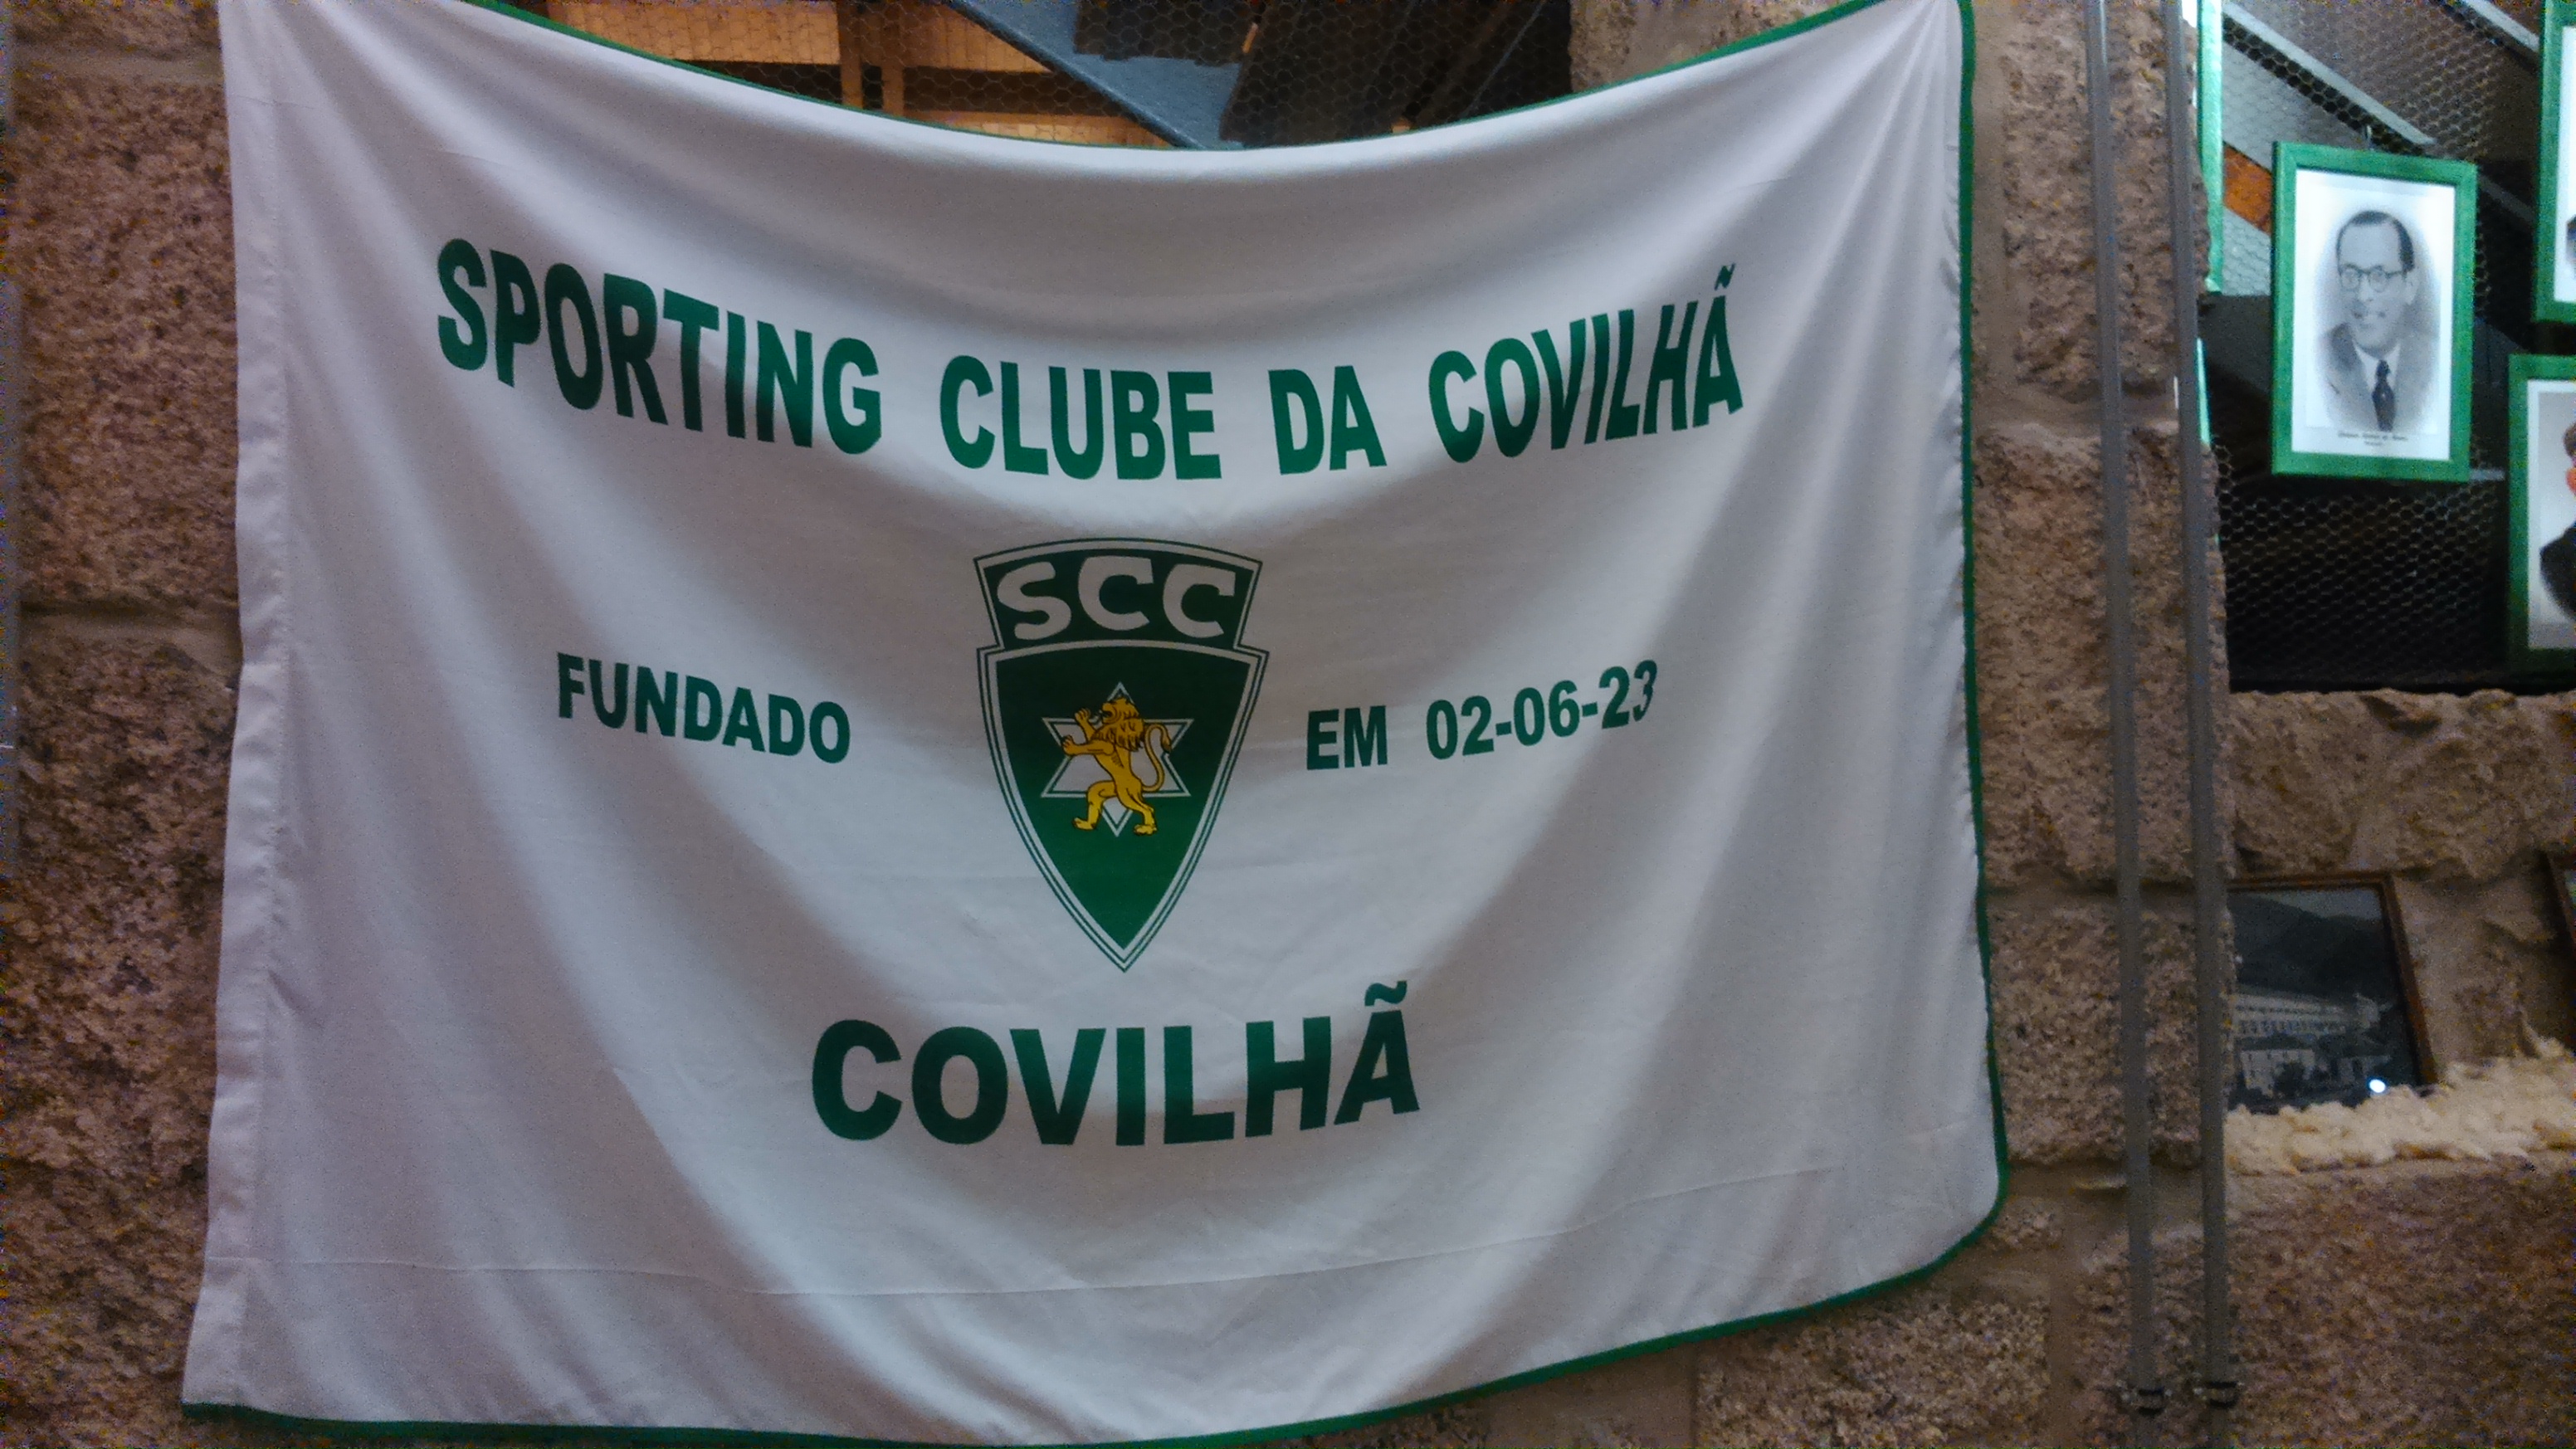 Bandeira com data Fundação Sporting Clube da Covilhã
Museu dos Lanifícios, Real Fábrica Veiga